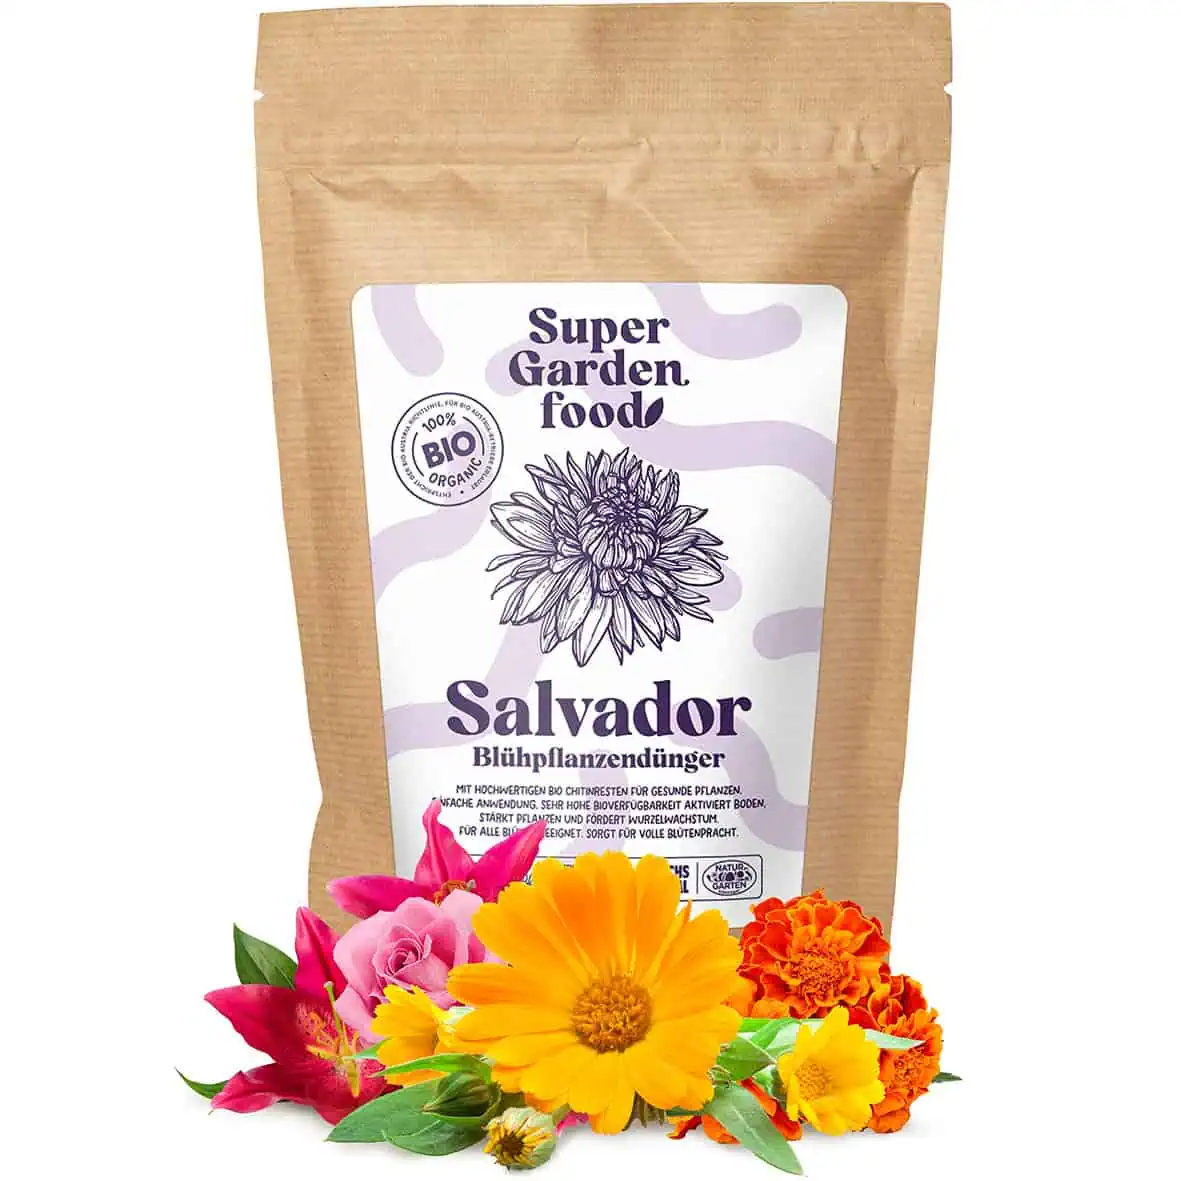 Blühpflanzendünger Salvador 1 kg